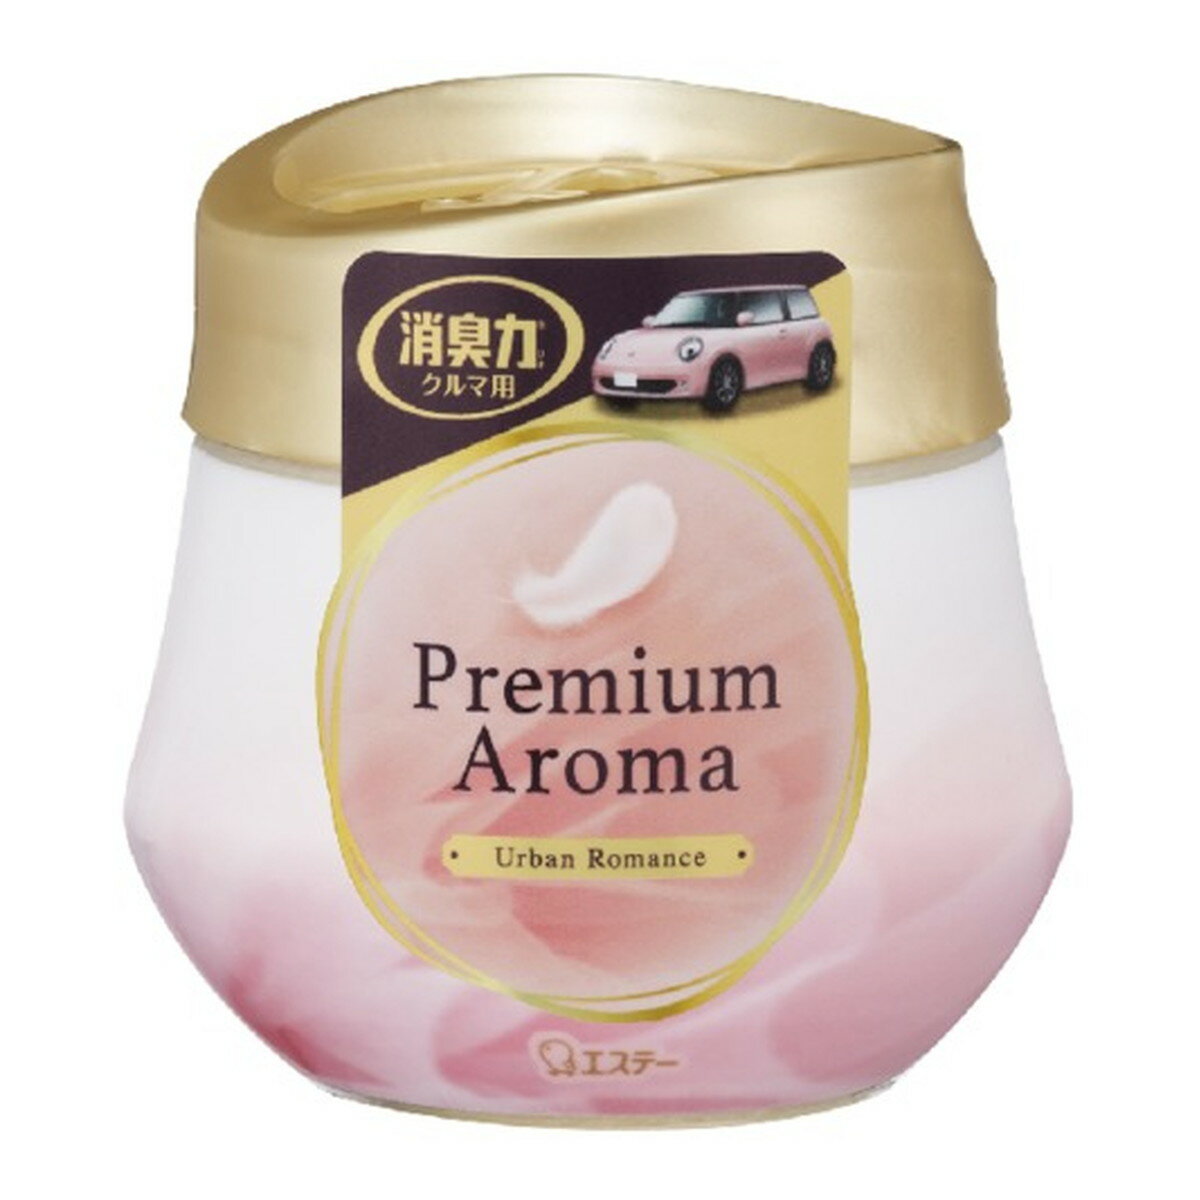 クルマの消臭力 Premium Aroma (プレミアムアロマ) ゲルタイプ アーバンロマンス 90g